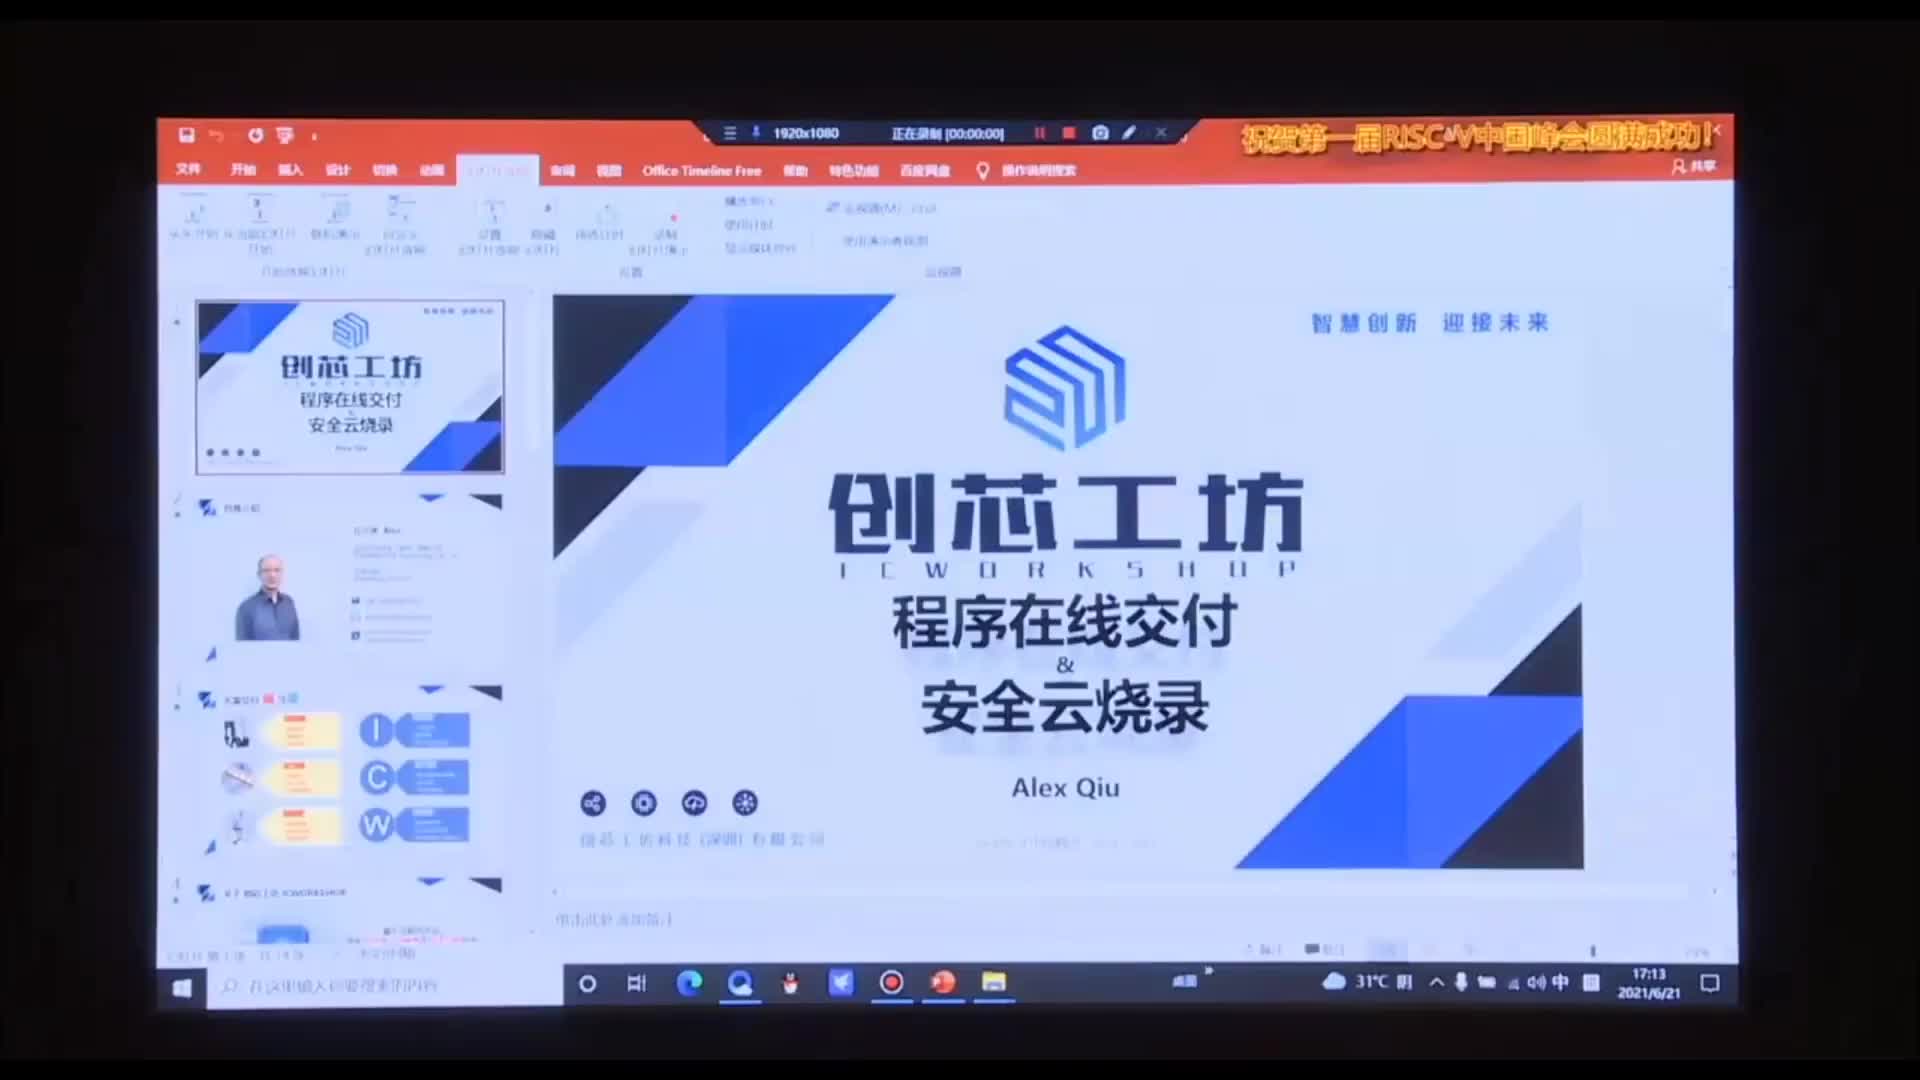 丘宁冰 - 创芯工坊云交付&安全烧录 - 第一届 RISC-V 中国峰会_batch